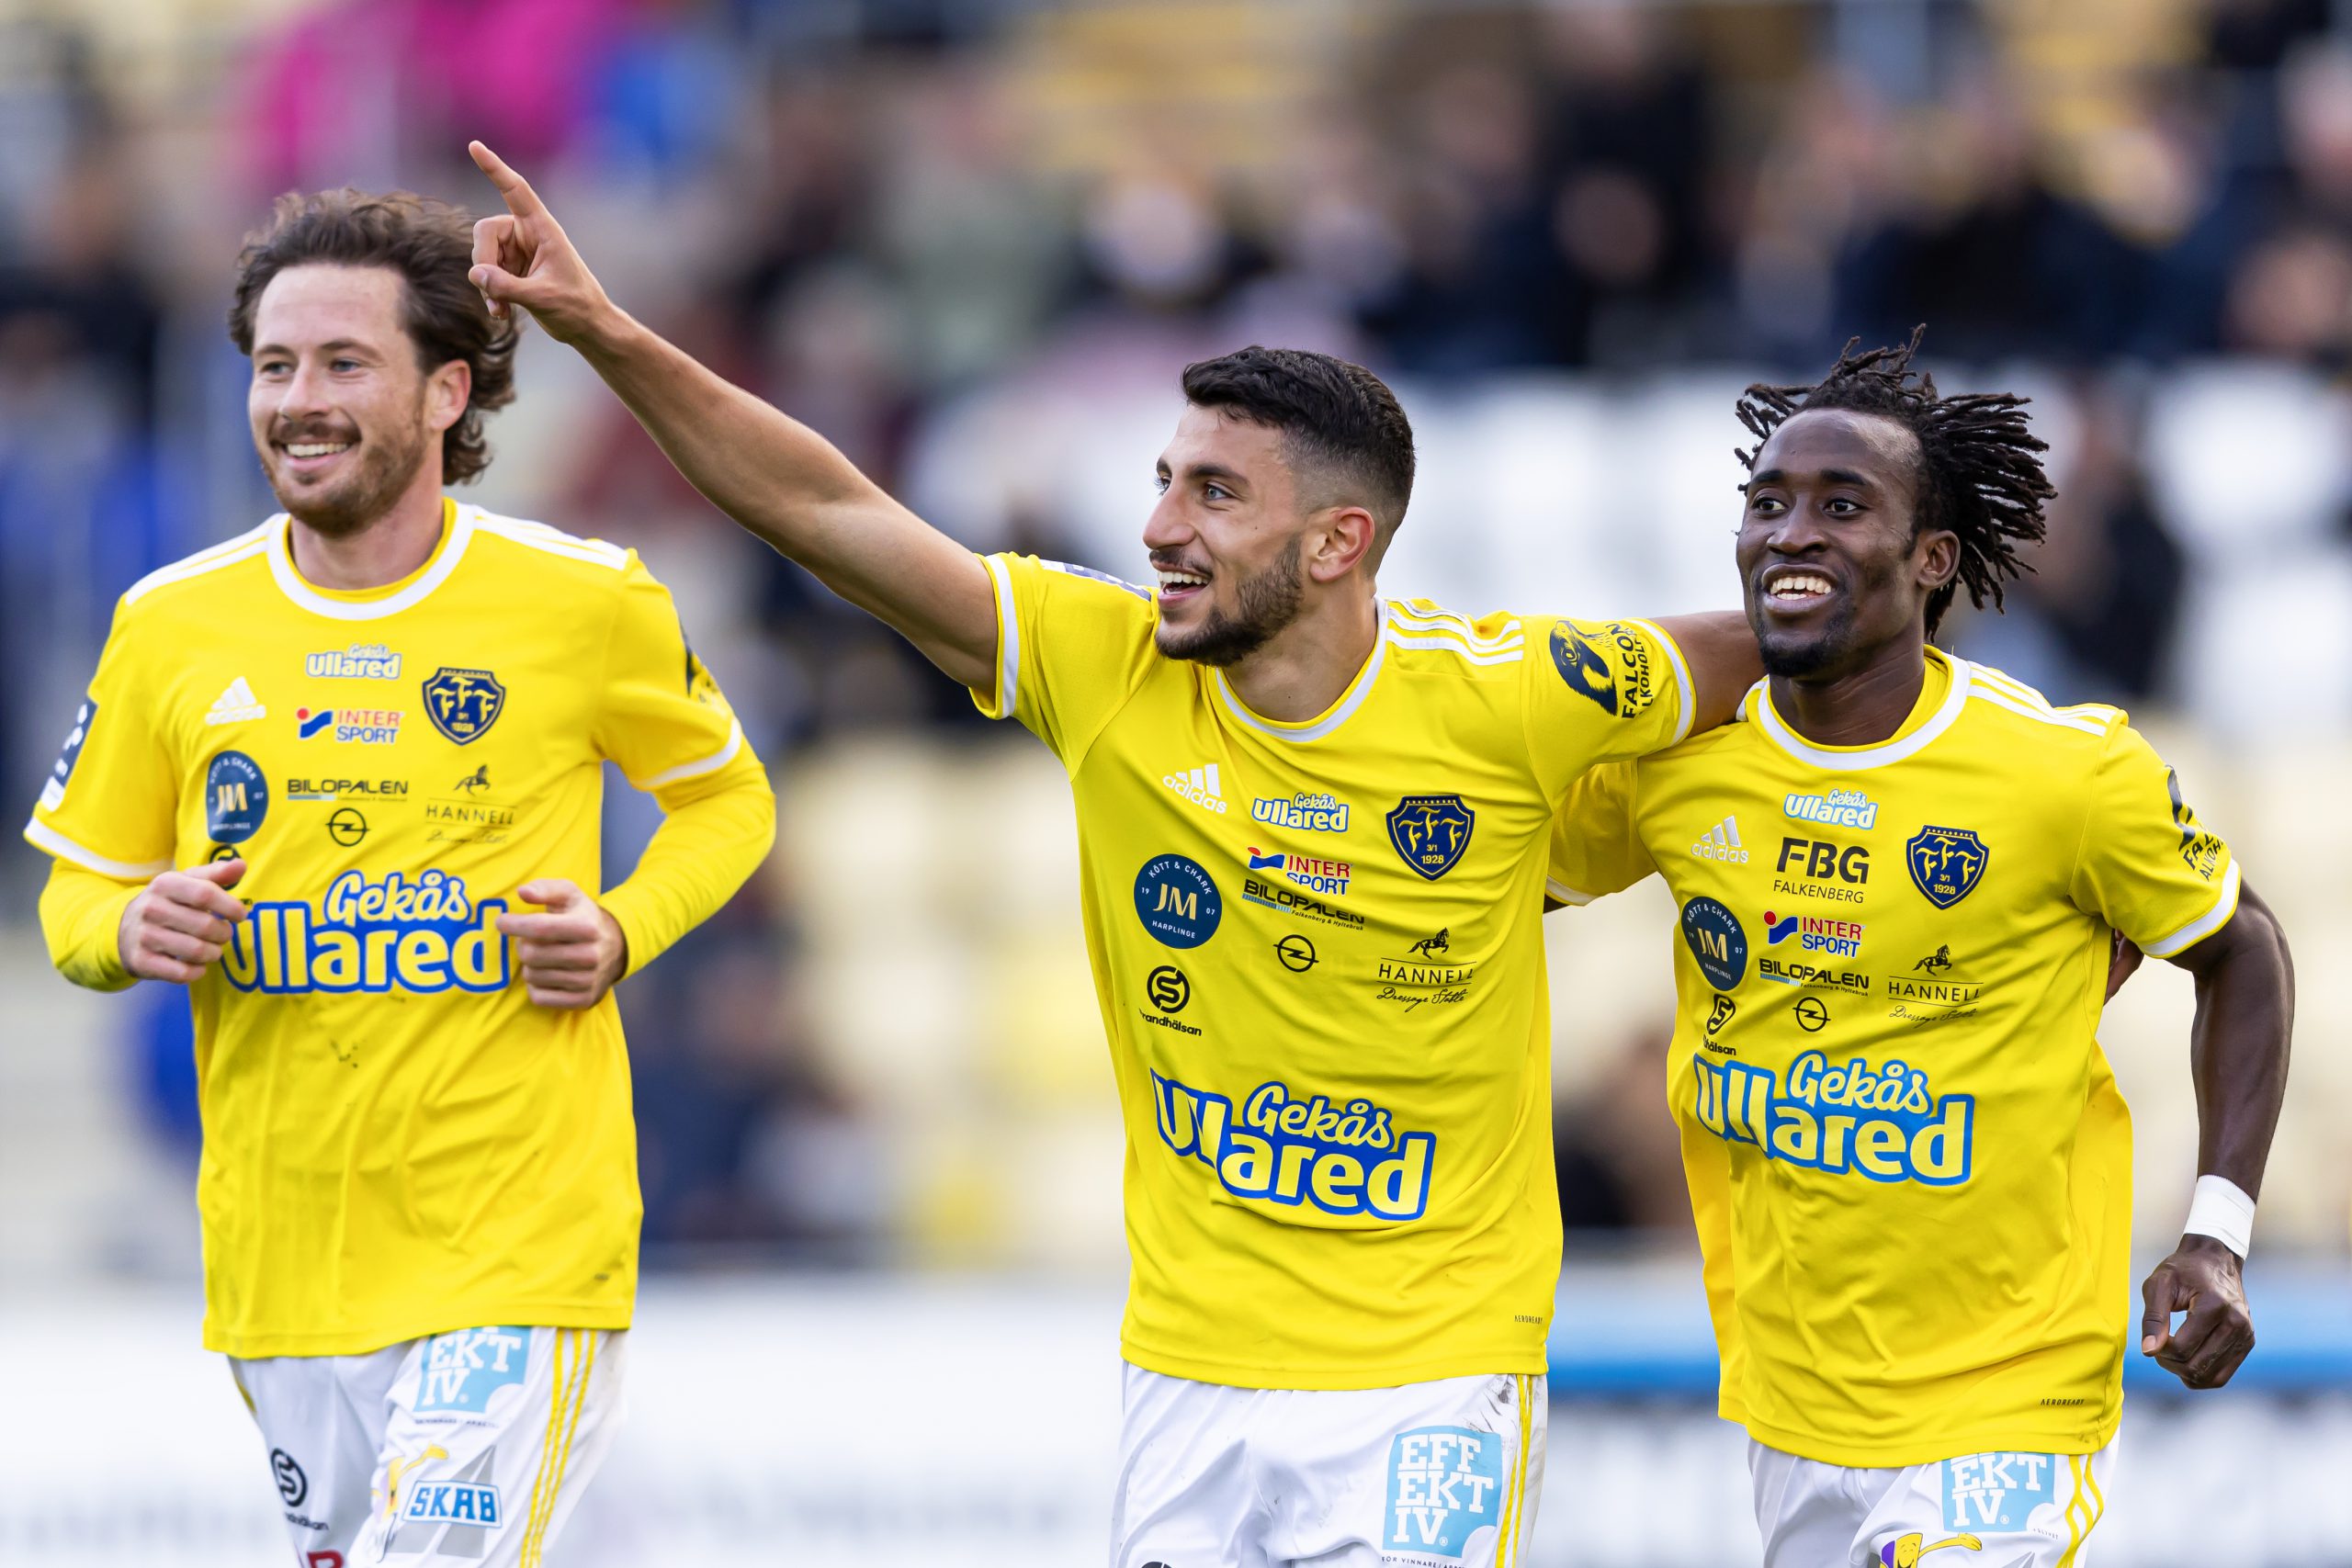 Inför Oskarshamns AIK borta: ”Tror på en hård match”